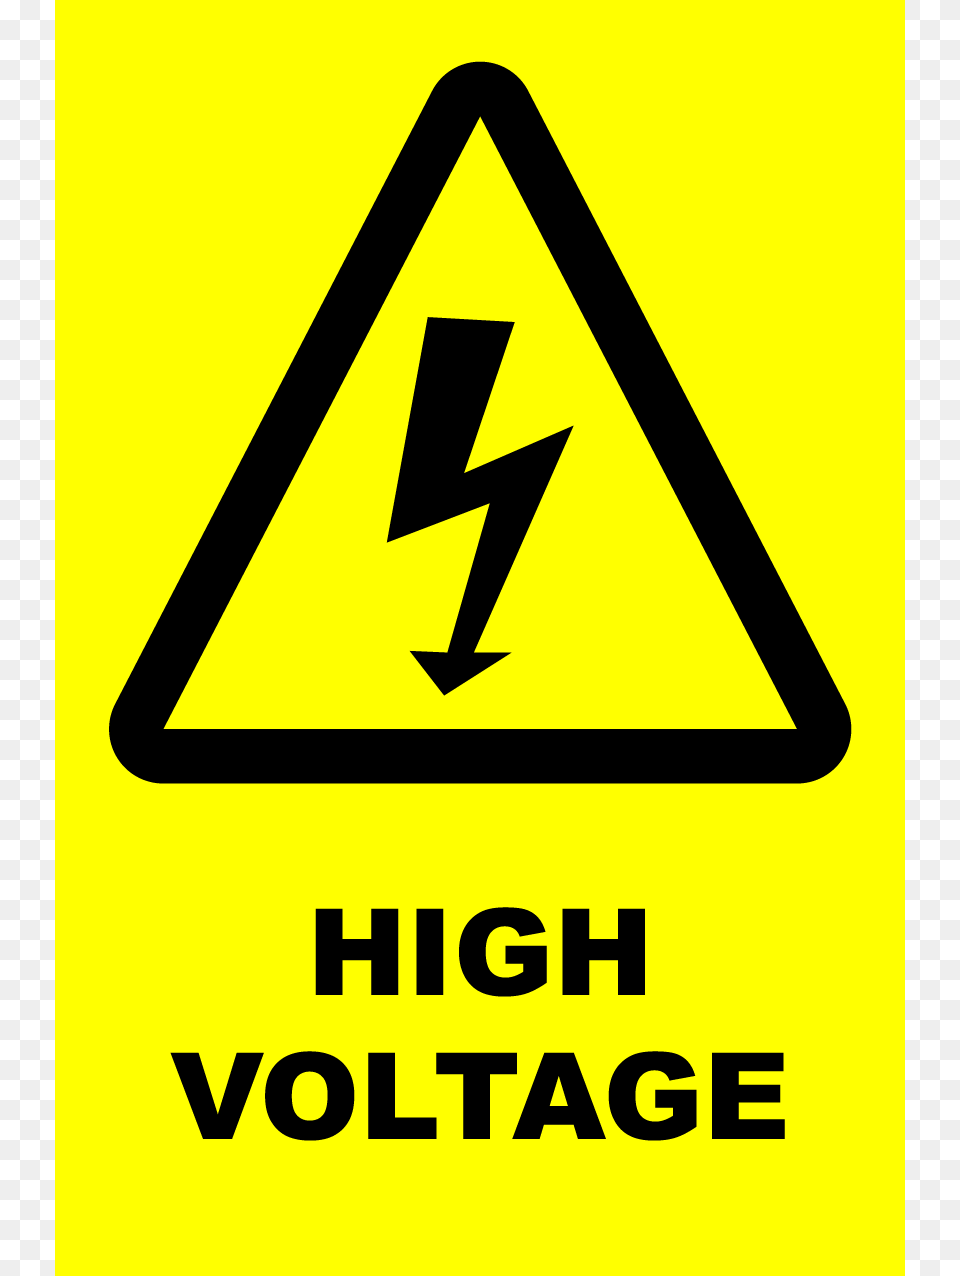 High Voltage, Sign, Symbol, Road Sign Png Image